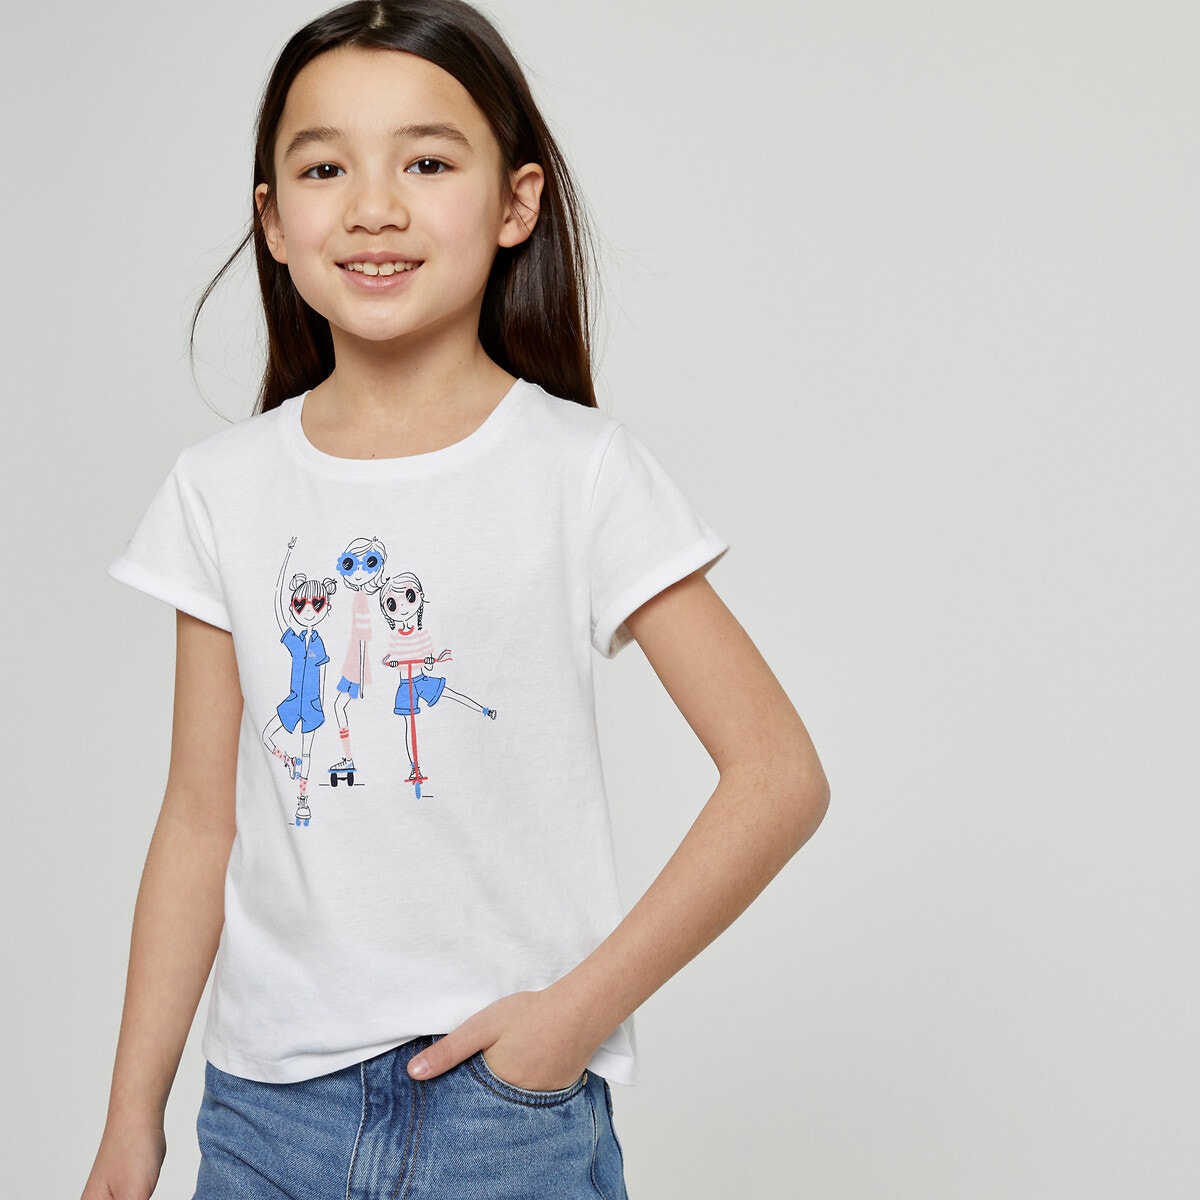 Μόδα > Παιδικά > Κορίτσι > T-shirt, αμάνικες μπλούζες > Κοντομάνικες μπλούζες Σετ 3 T-shirt με στρογγυλή λαιμόκοψη